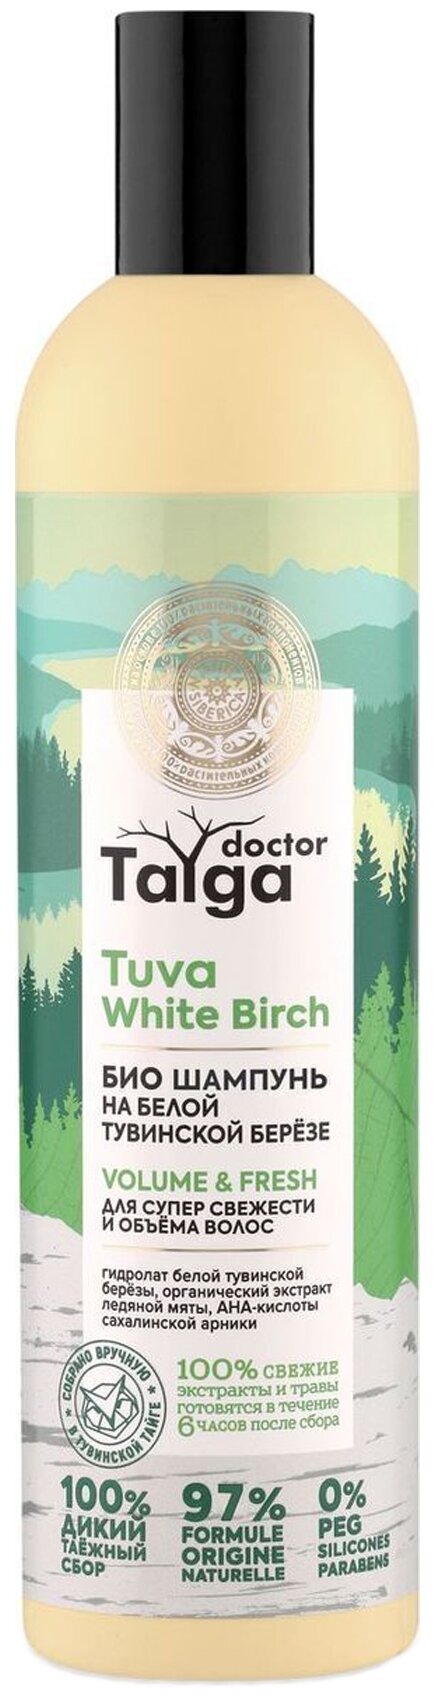 Бальзам для волос Natura Siberica Doctor Taiga на белой тувинской березе для объема 400мл - фото №1